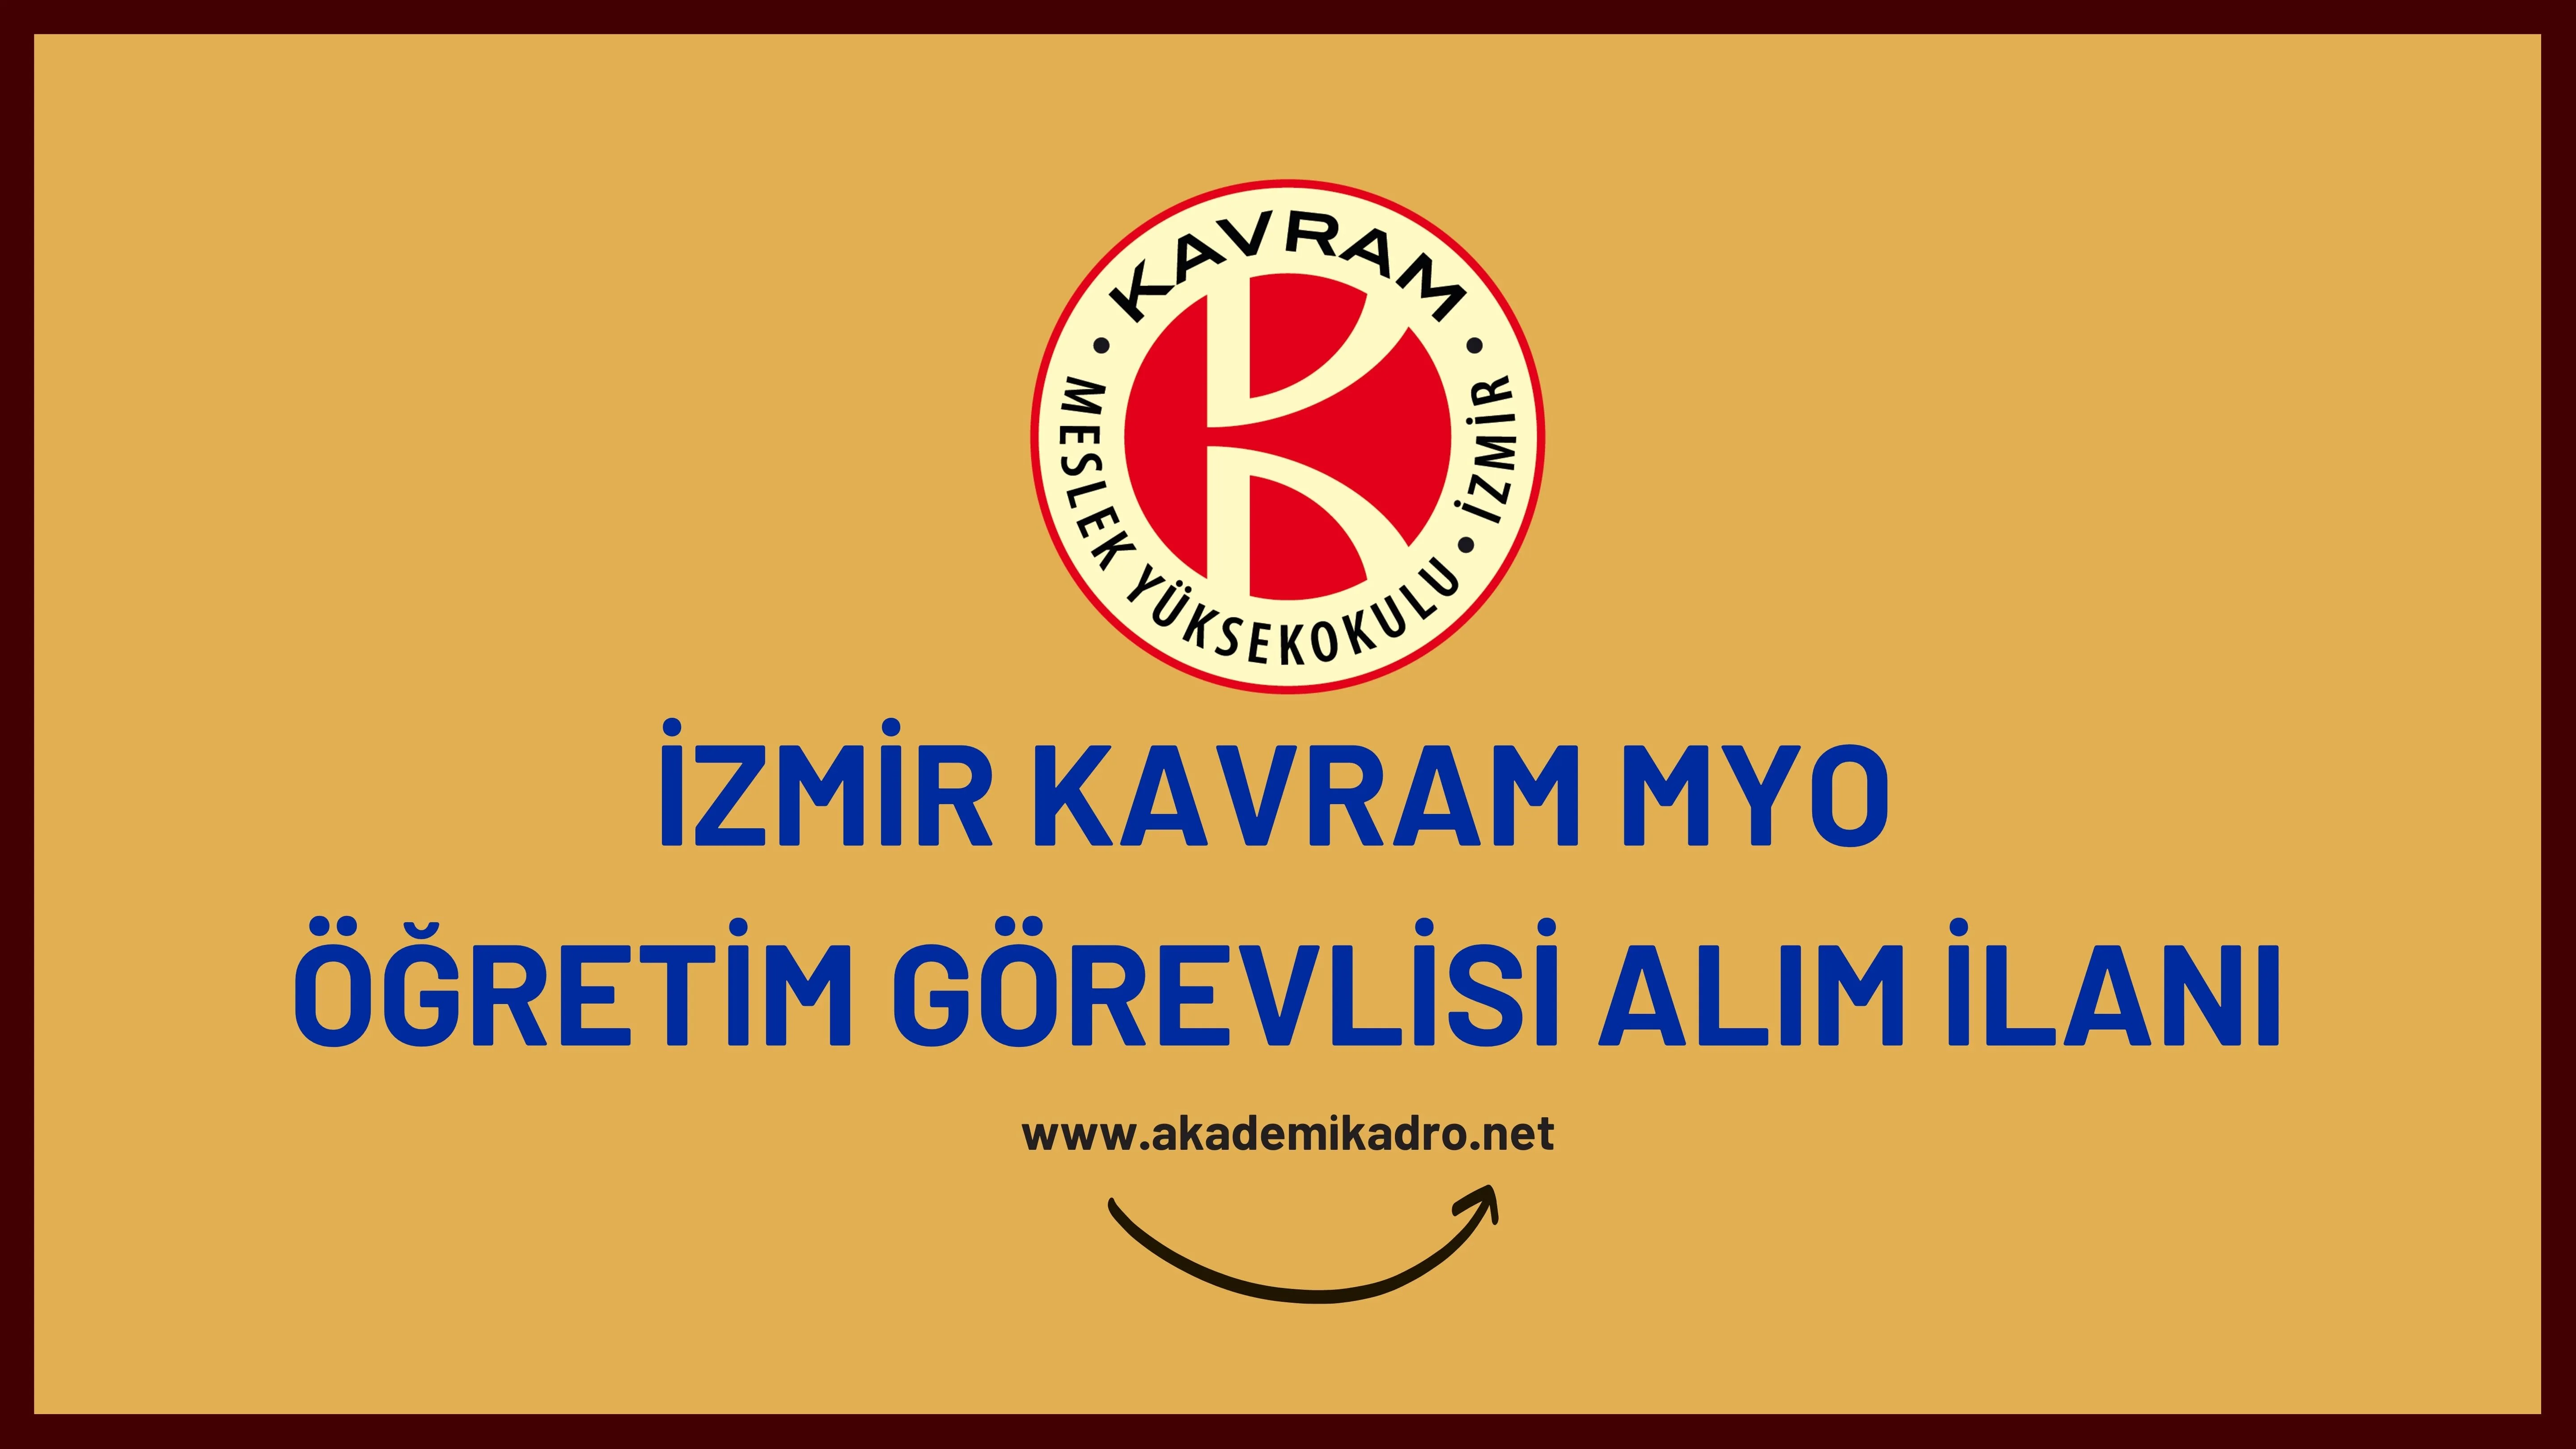 İzmir Kavram Meslek Yüksekokulu 5 Öğretim Görevlisi alacaktır. Son başvuru tarihi 13 Şubat 2023